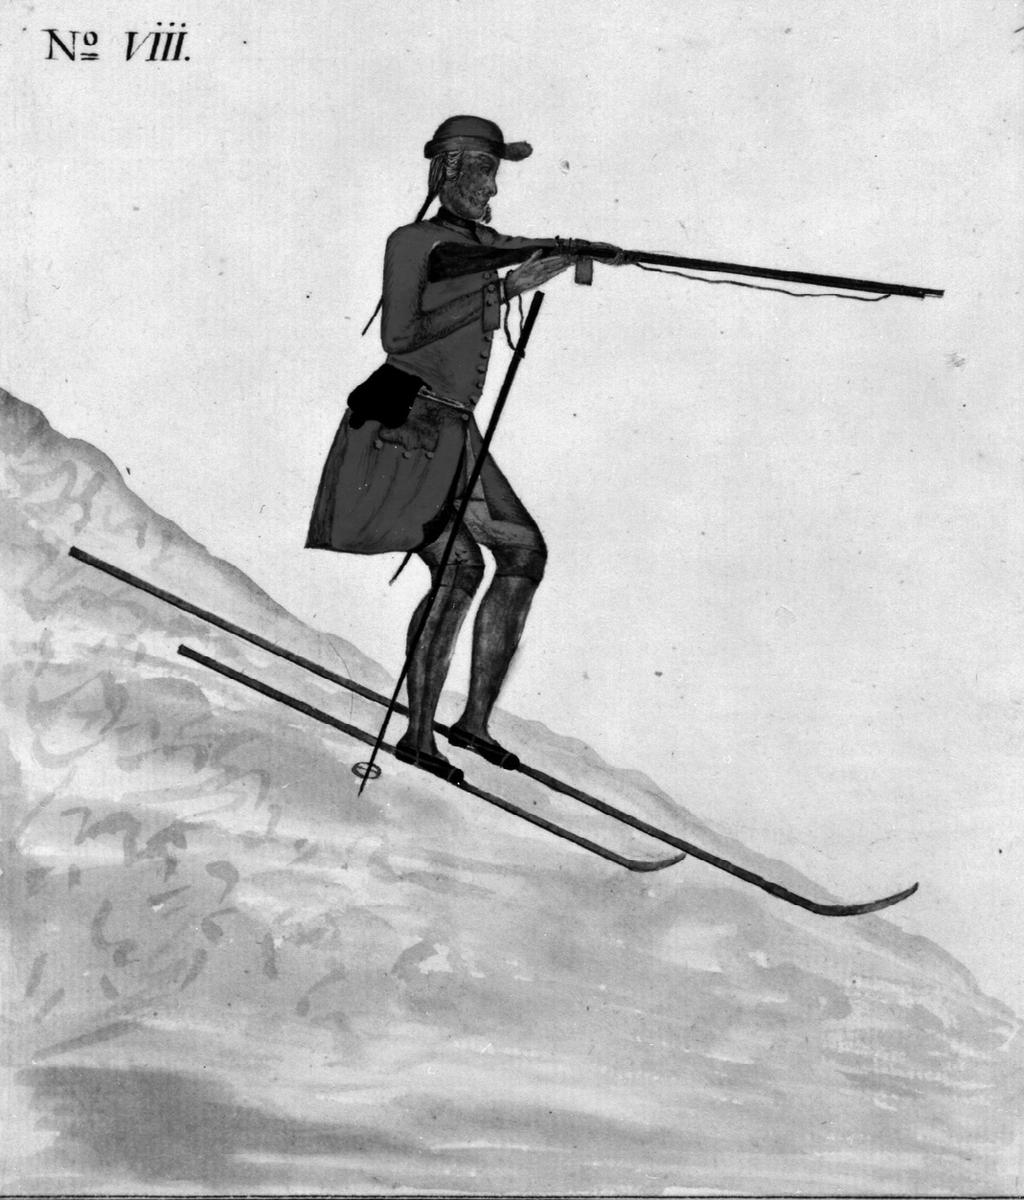 muligens tidlige utgaver eller forløpere til skjoldlua, som jeg ikke kjenner til har vært omtalt tidligere i denne sammenheng. Den ene er en plansje fra 1765 av skiløper som skyter under utforkjøring.